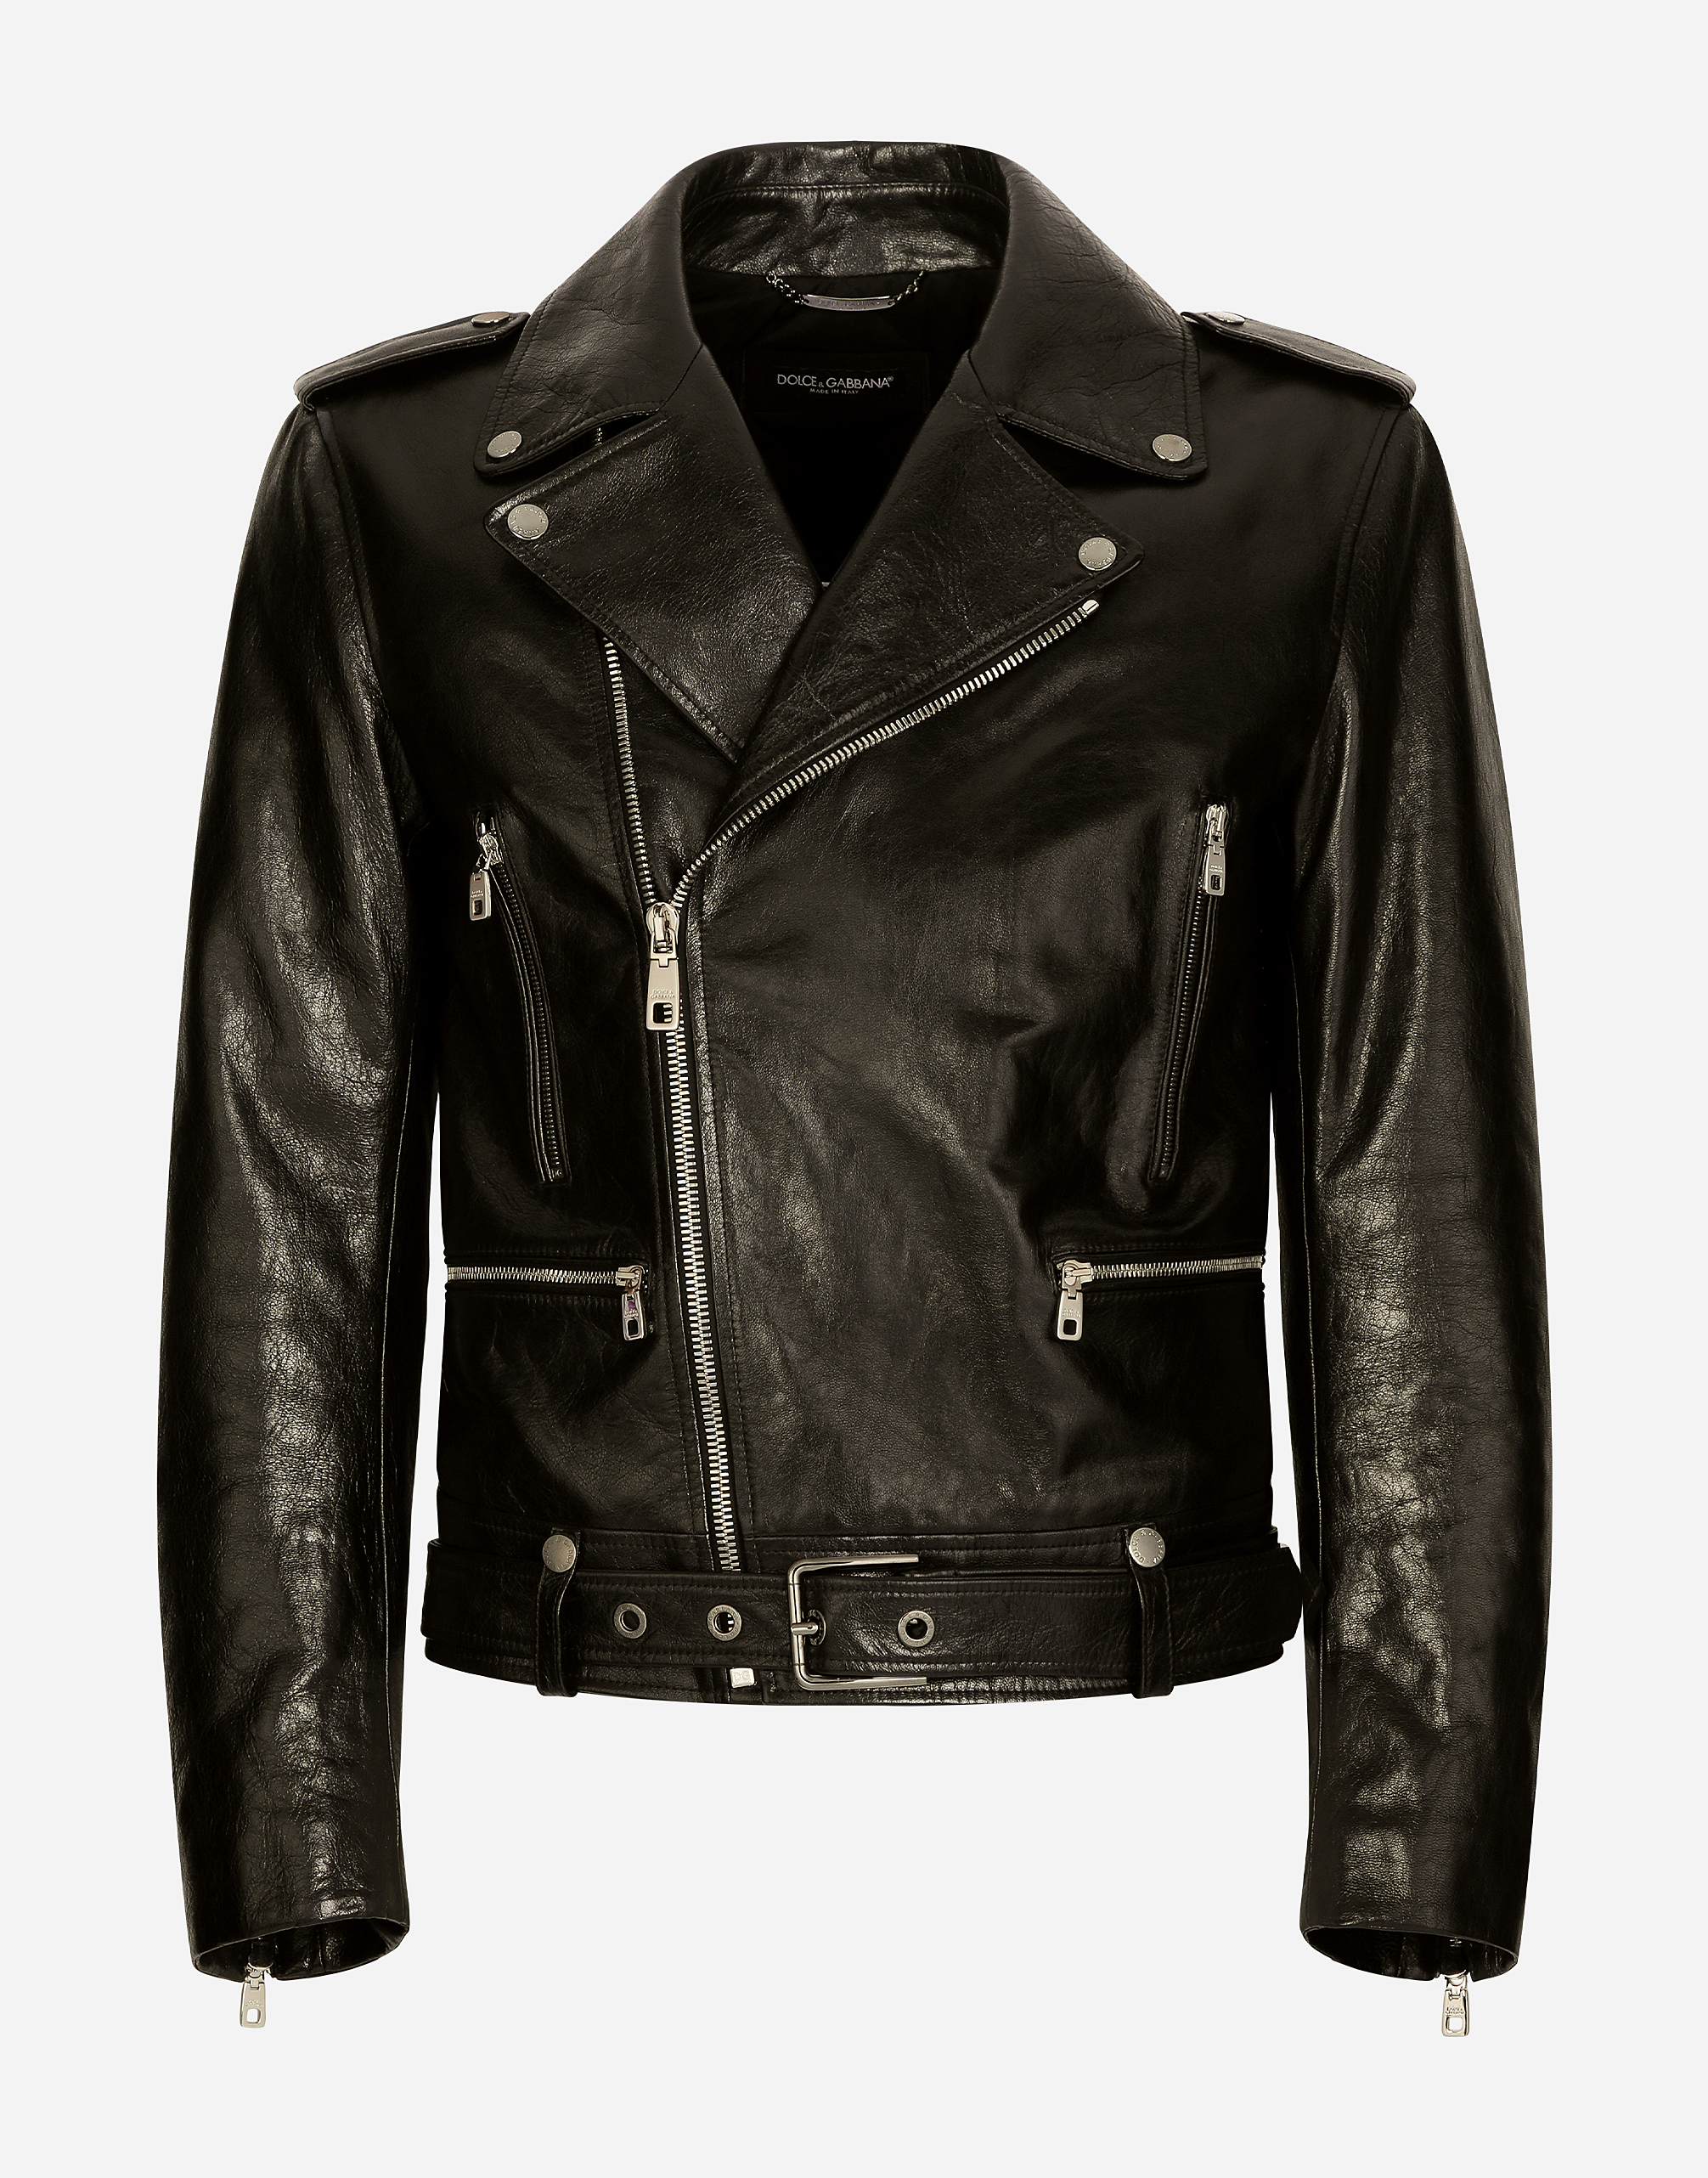 Dolce & Gabbana Belted Leather Biker Jacket In Black